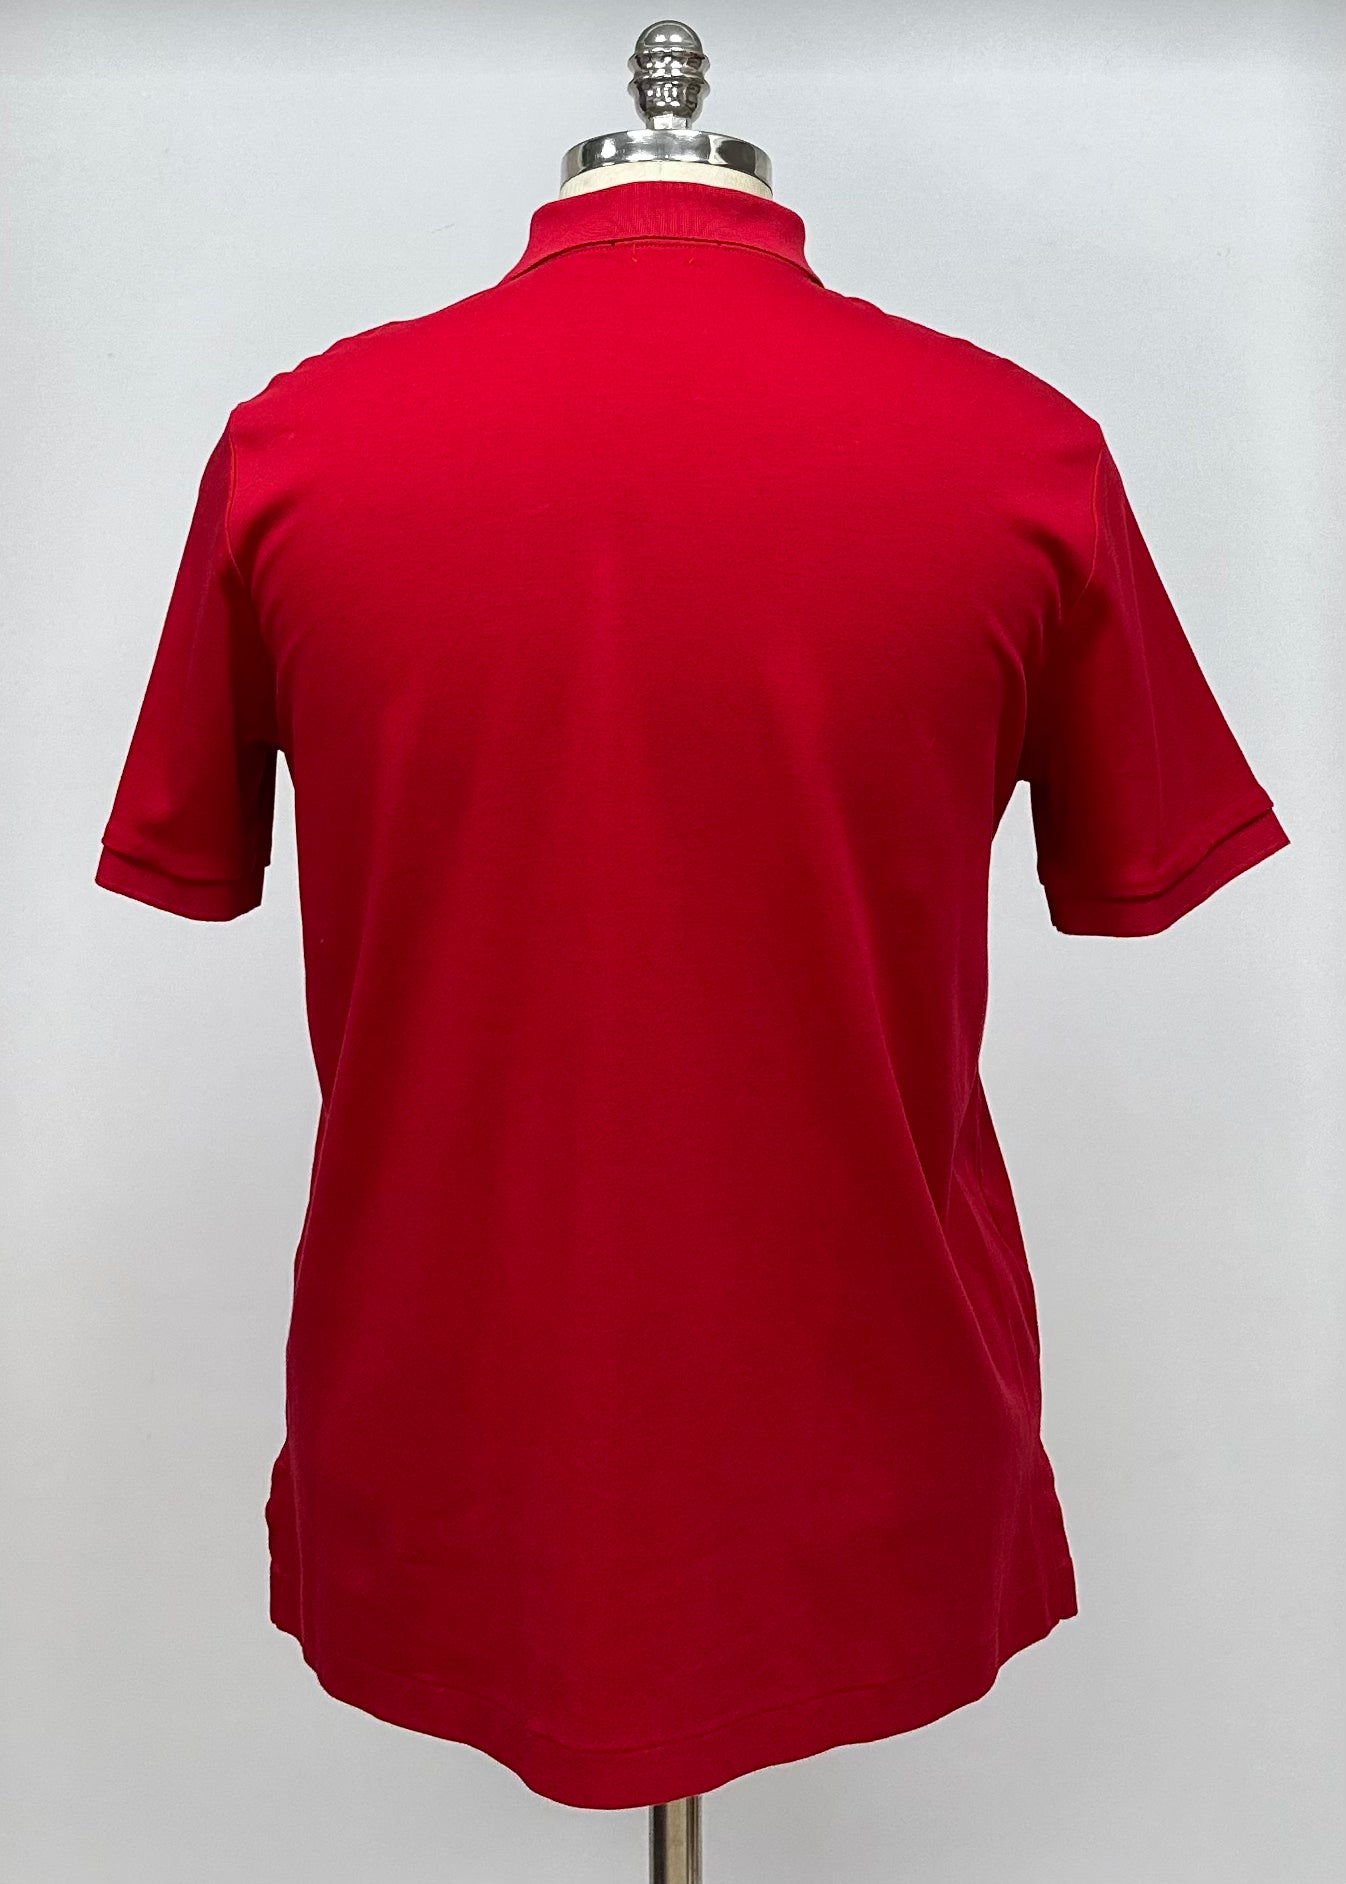 Camiseta Polo Ralph Lauren 🏇🏼color rojo Talla M Entalle Clásico